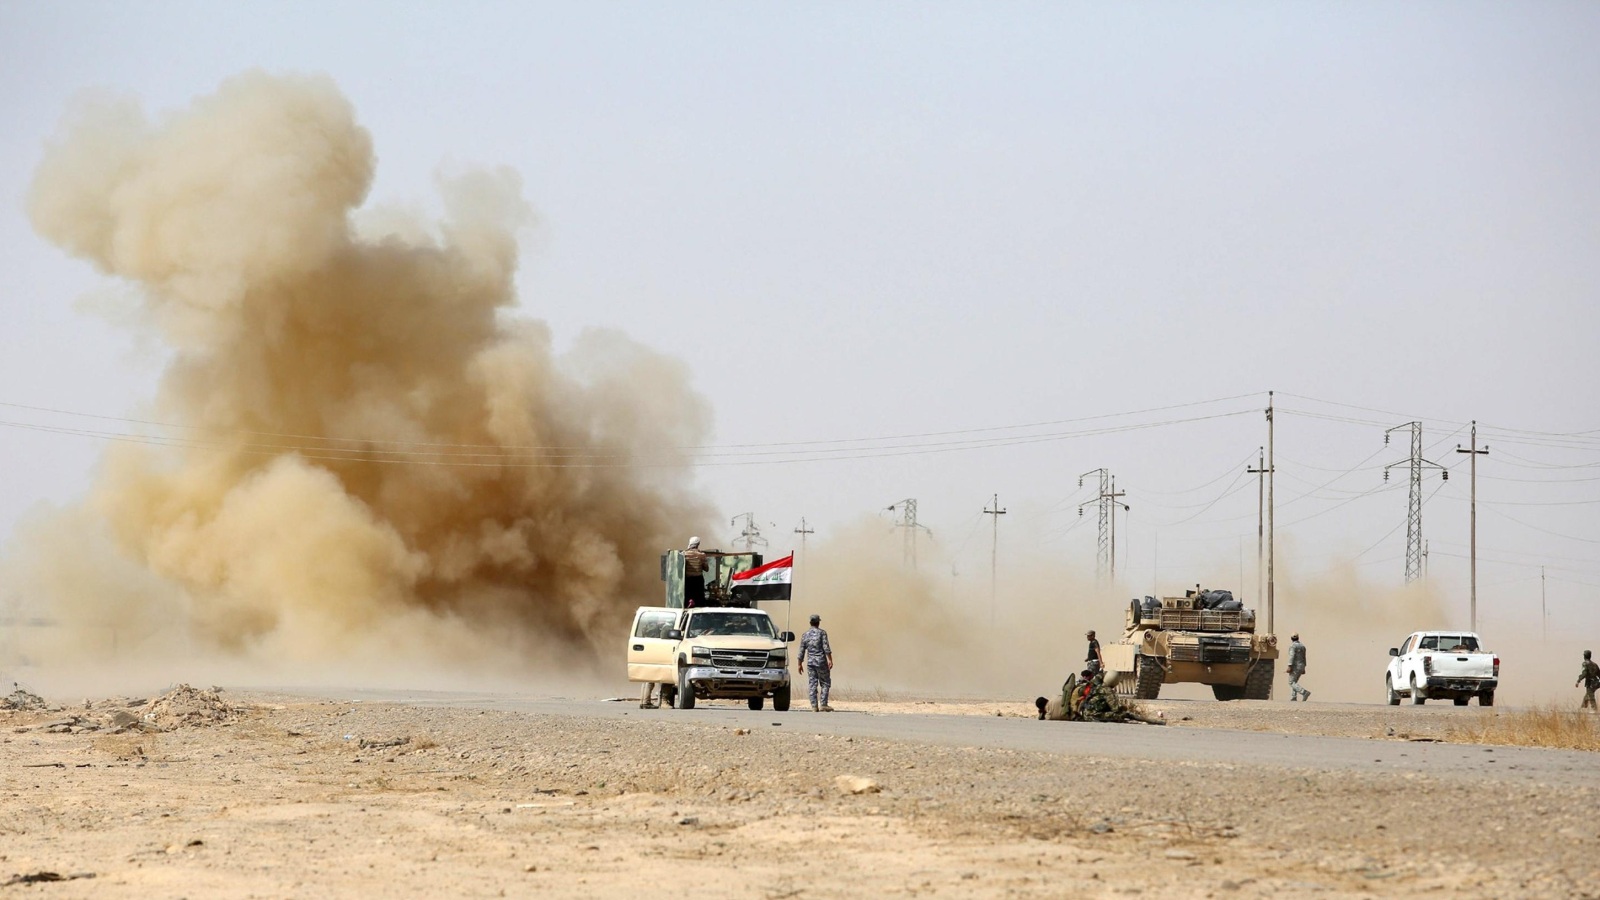 ‪عبوة ناسفة زرعها تنظيم الدولة وفجرتها القوات العراقية خلال القتال الجاري منذ أيام بأطراف مدينة بيجي‬ (رويترز)